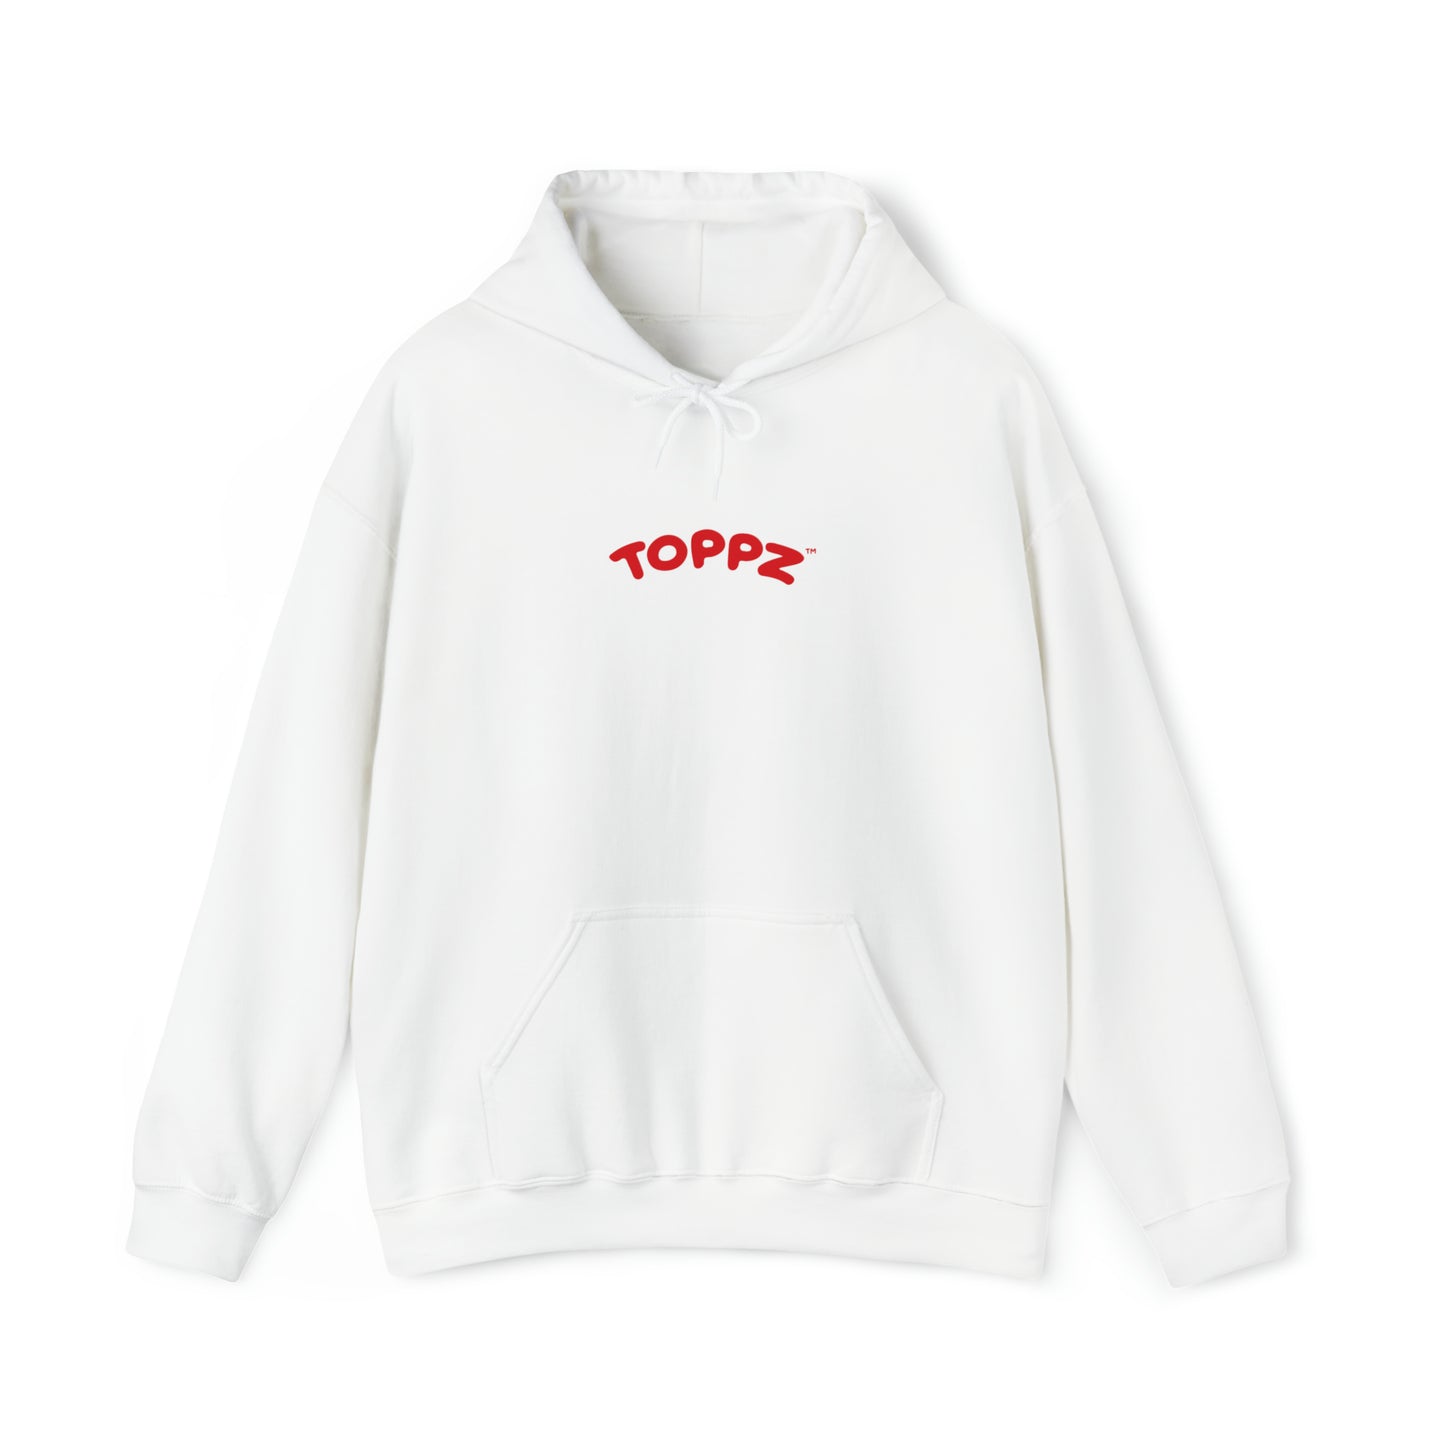 Toppz Hooded Sweatshirt